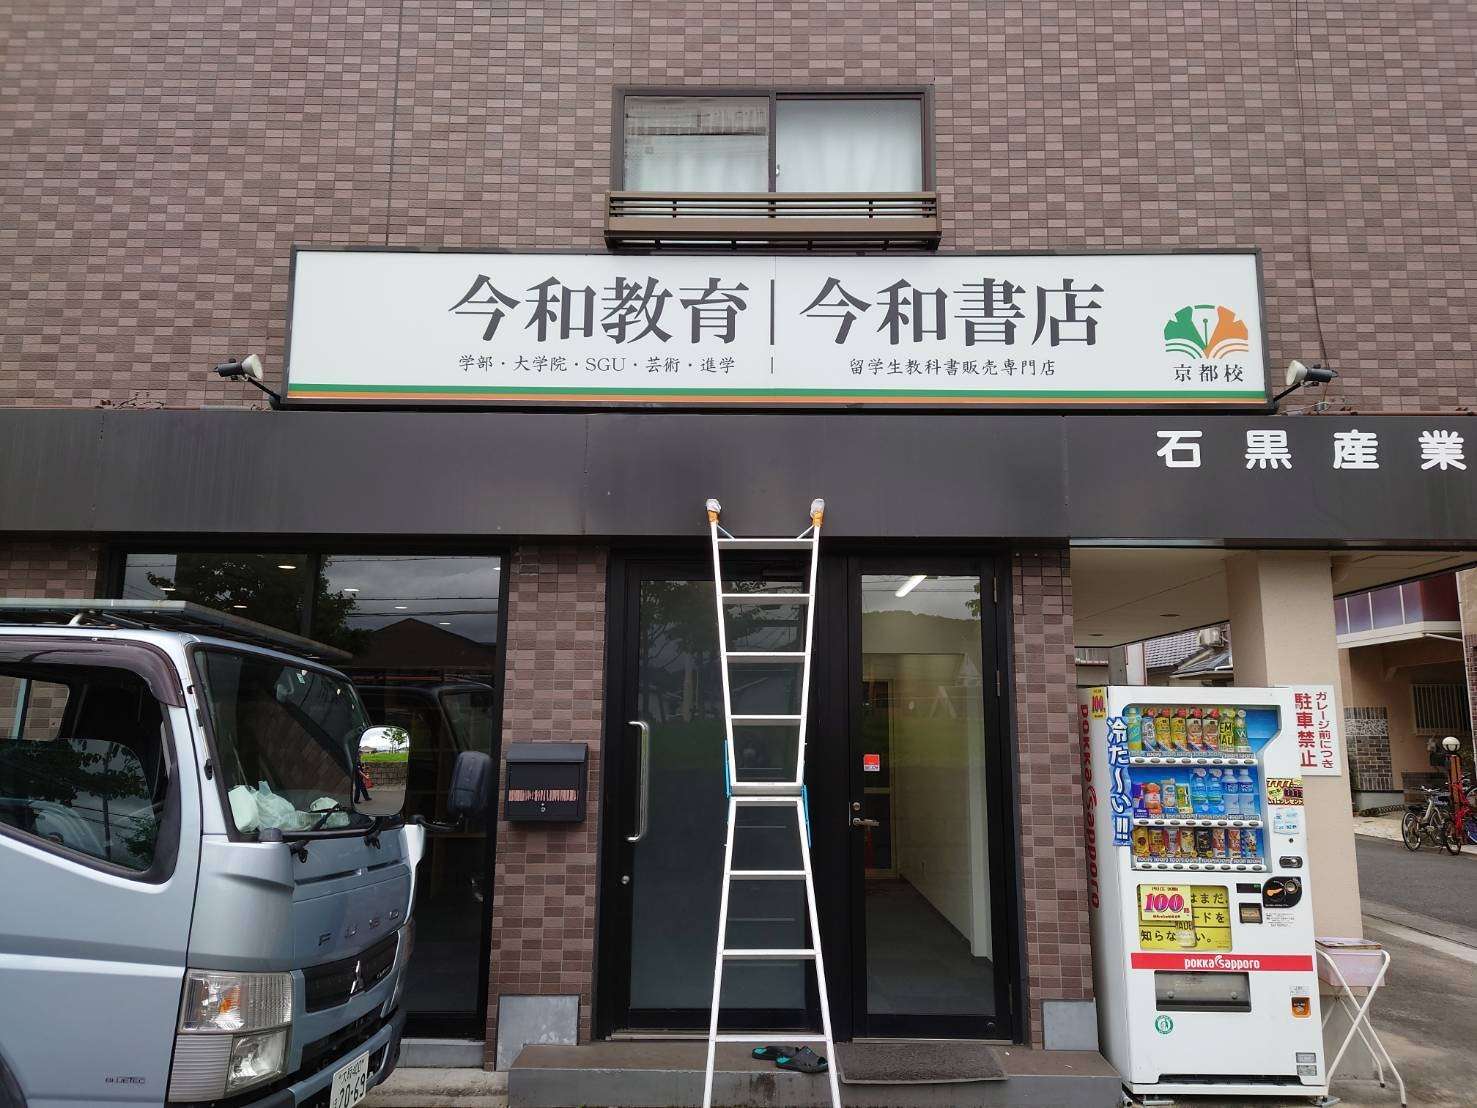 京都府で電飾の看板の施工でした。